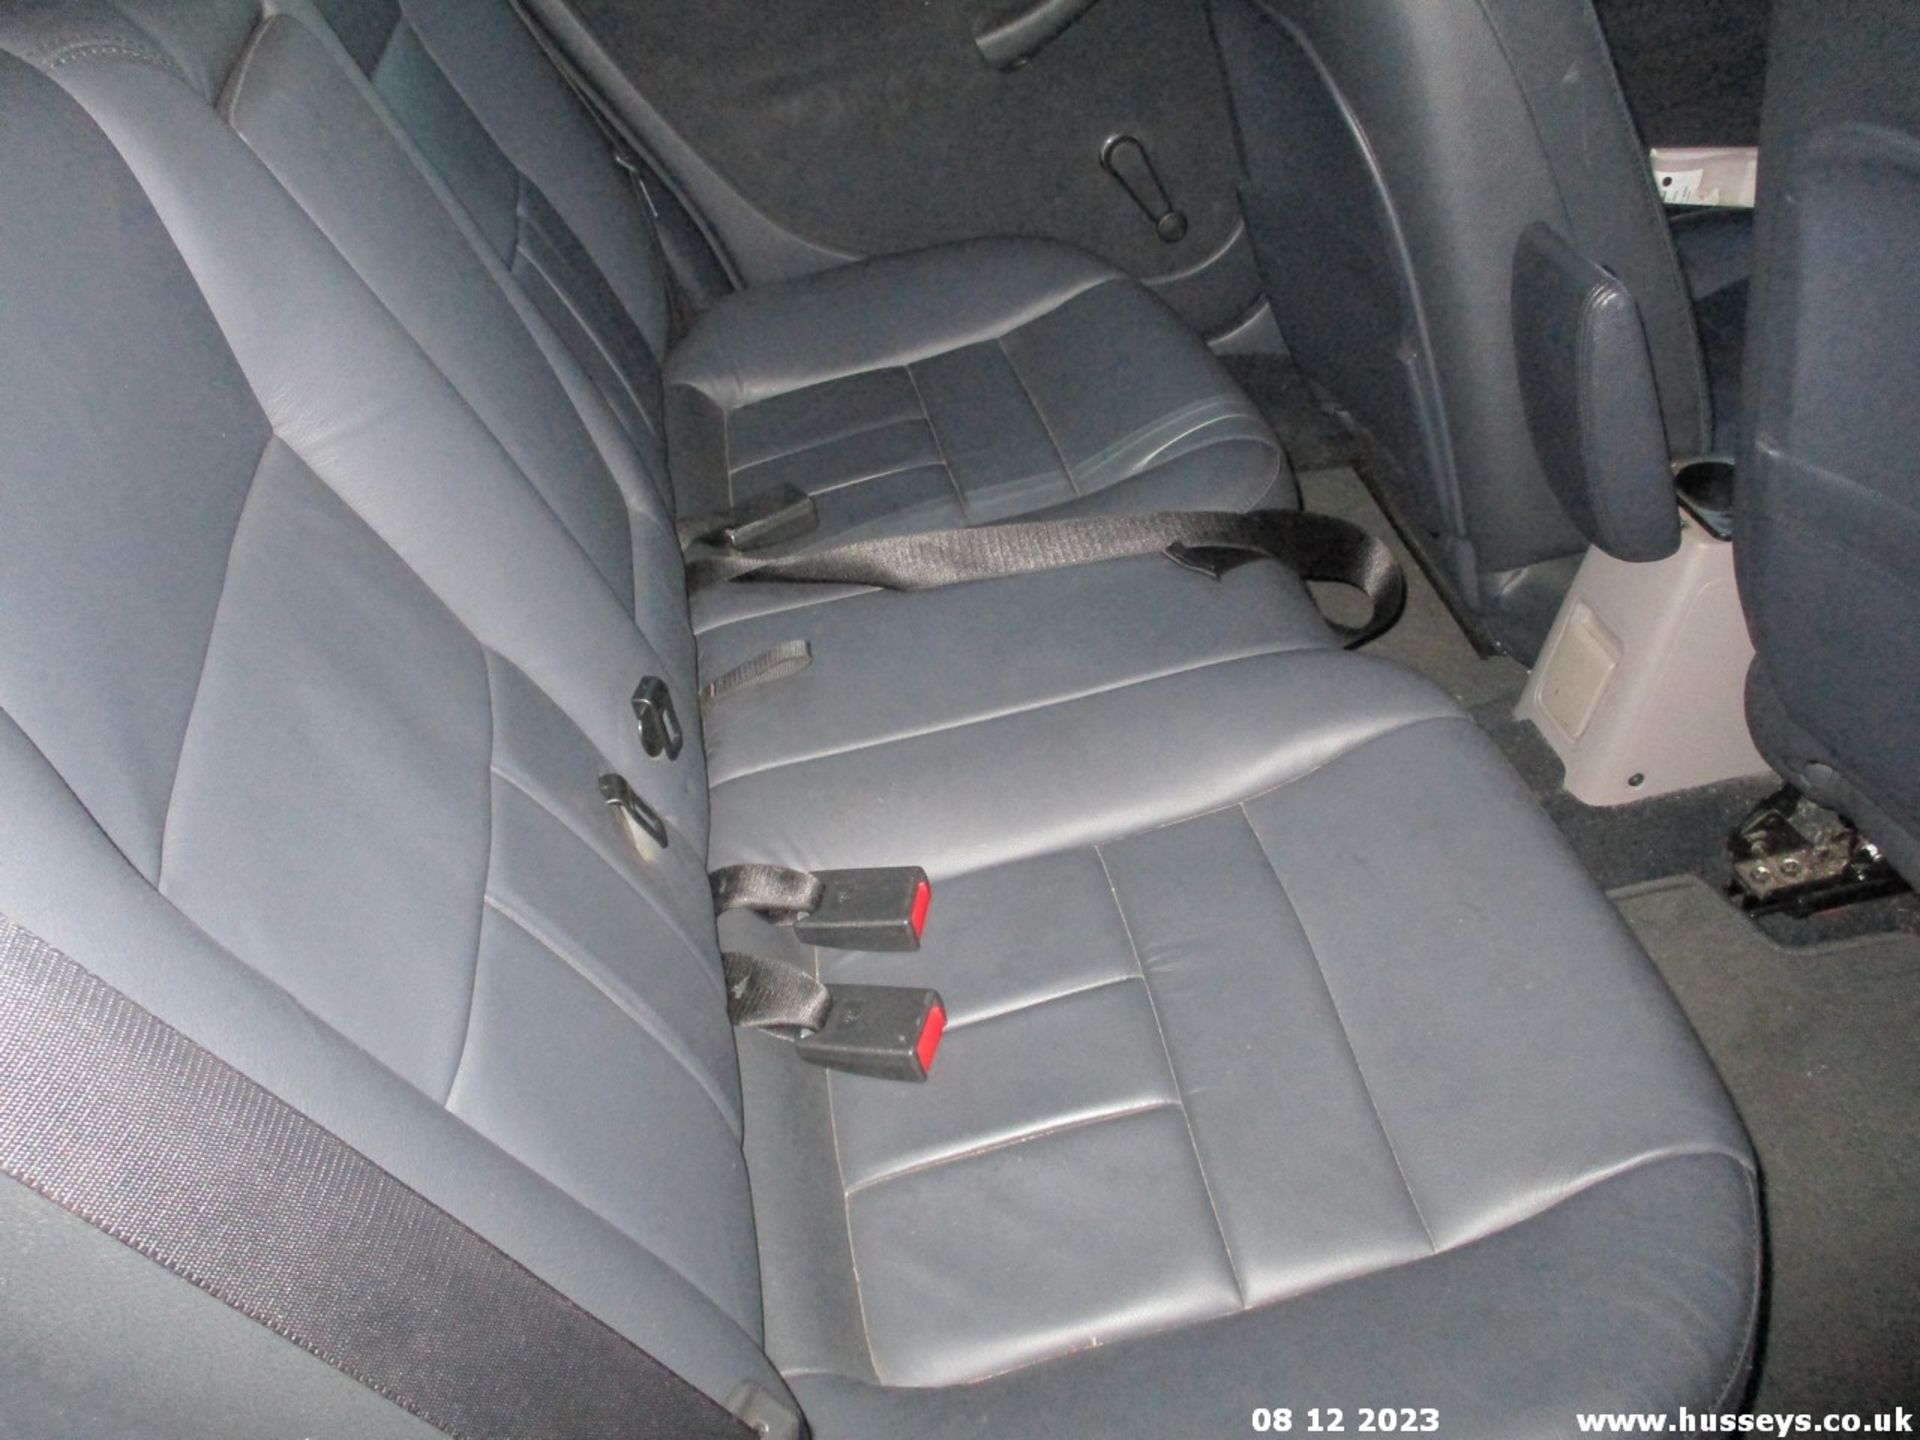 04/04 ROVER 45 IMPRESSION S3 - 1588cc 5dr Hatchback (Red, 96k) - Image 8 of 12